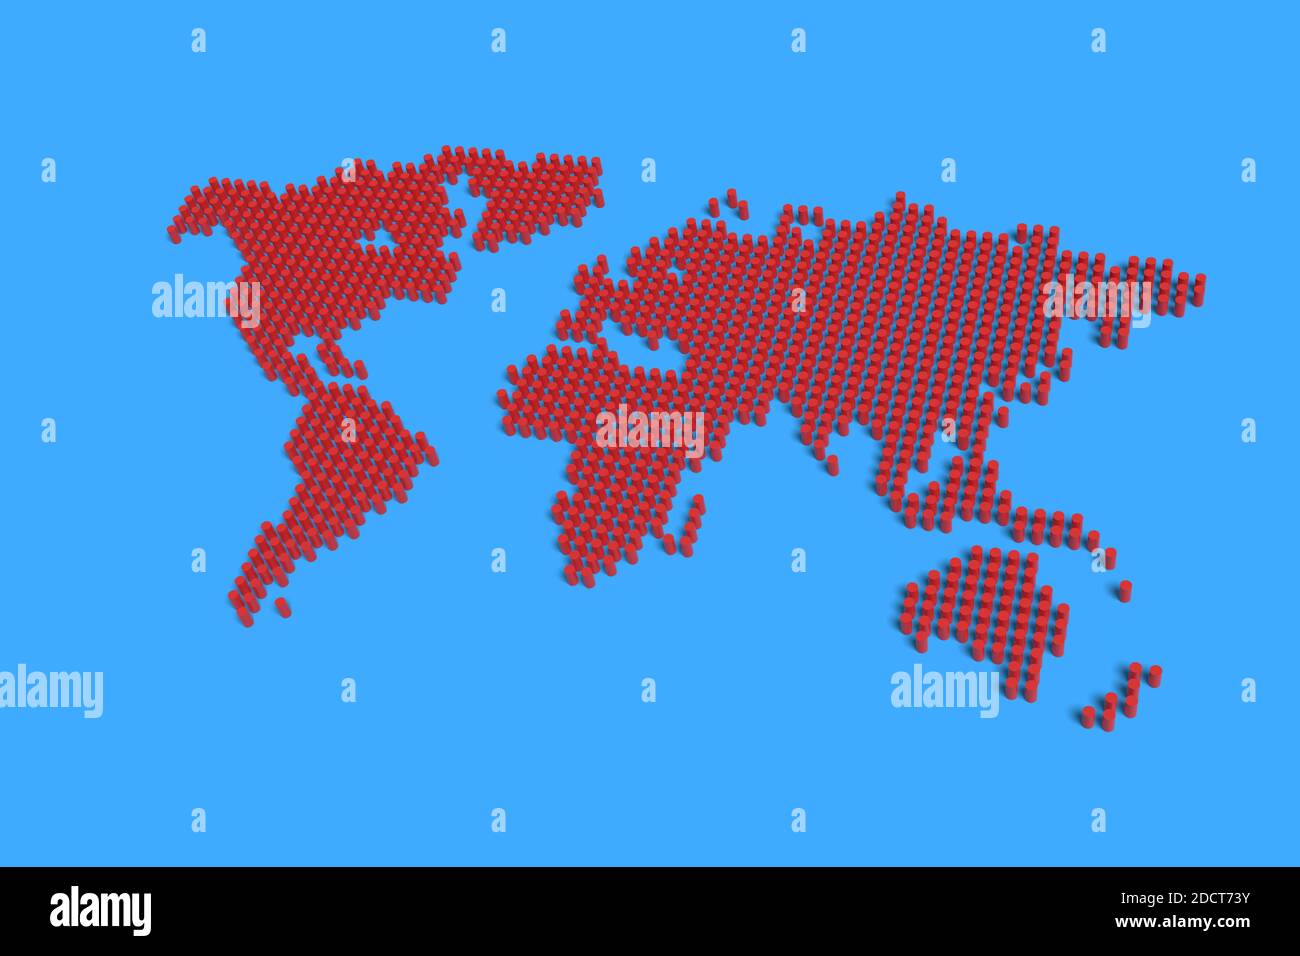 Mapa del mundo hecho de columnas rojas. ilustración 3d. Foto de stock